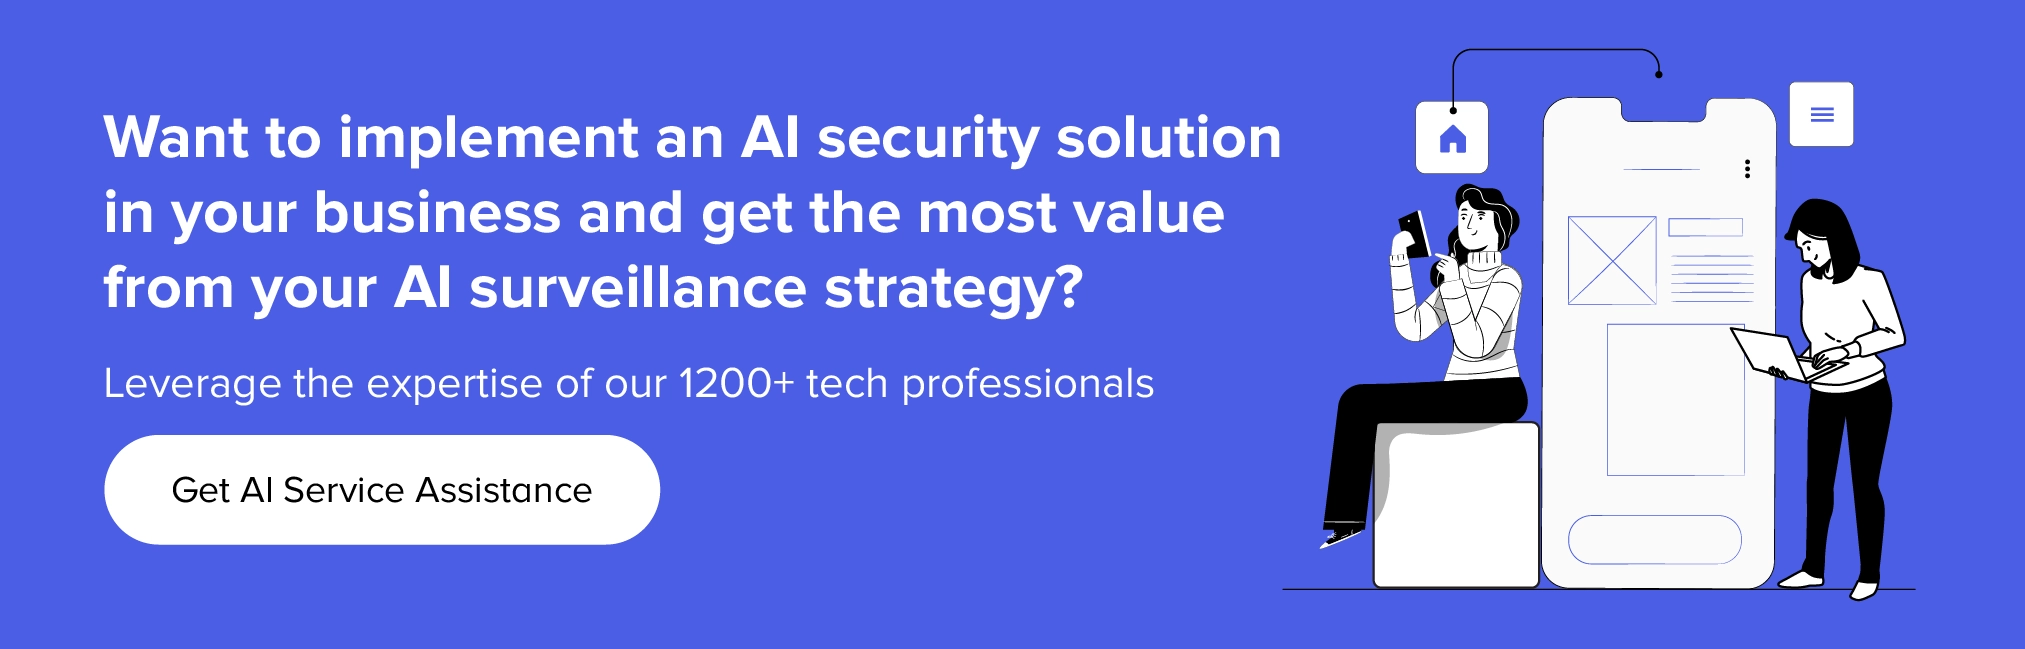 Contáctenos para implementar soluciones de seguridad de IA en su negocio